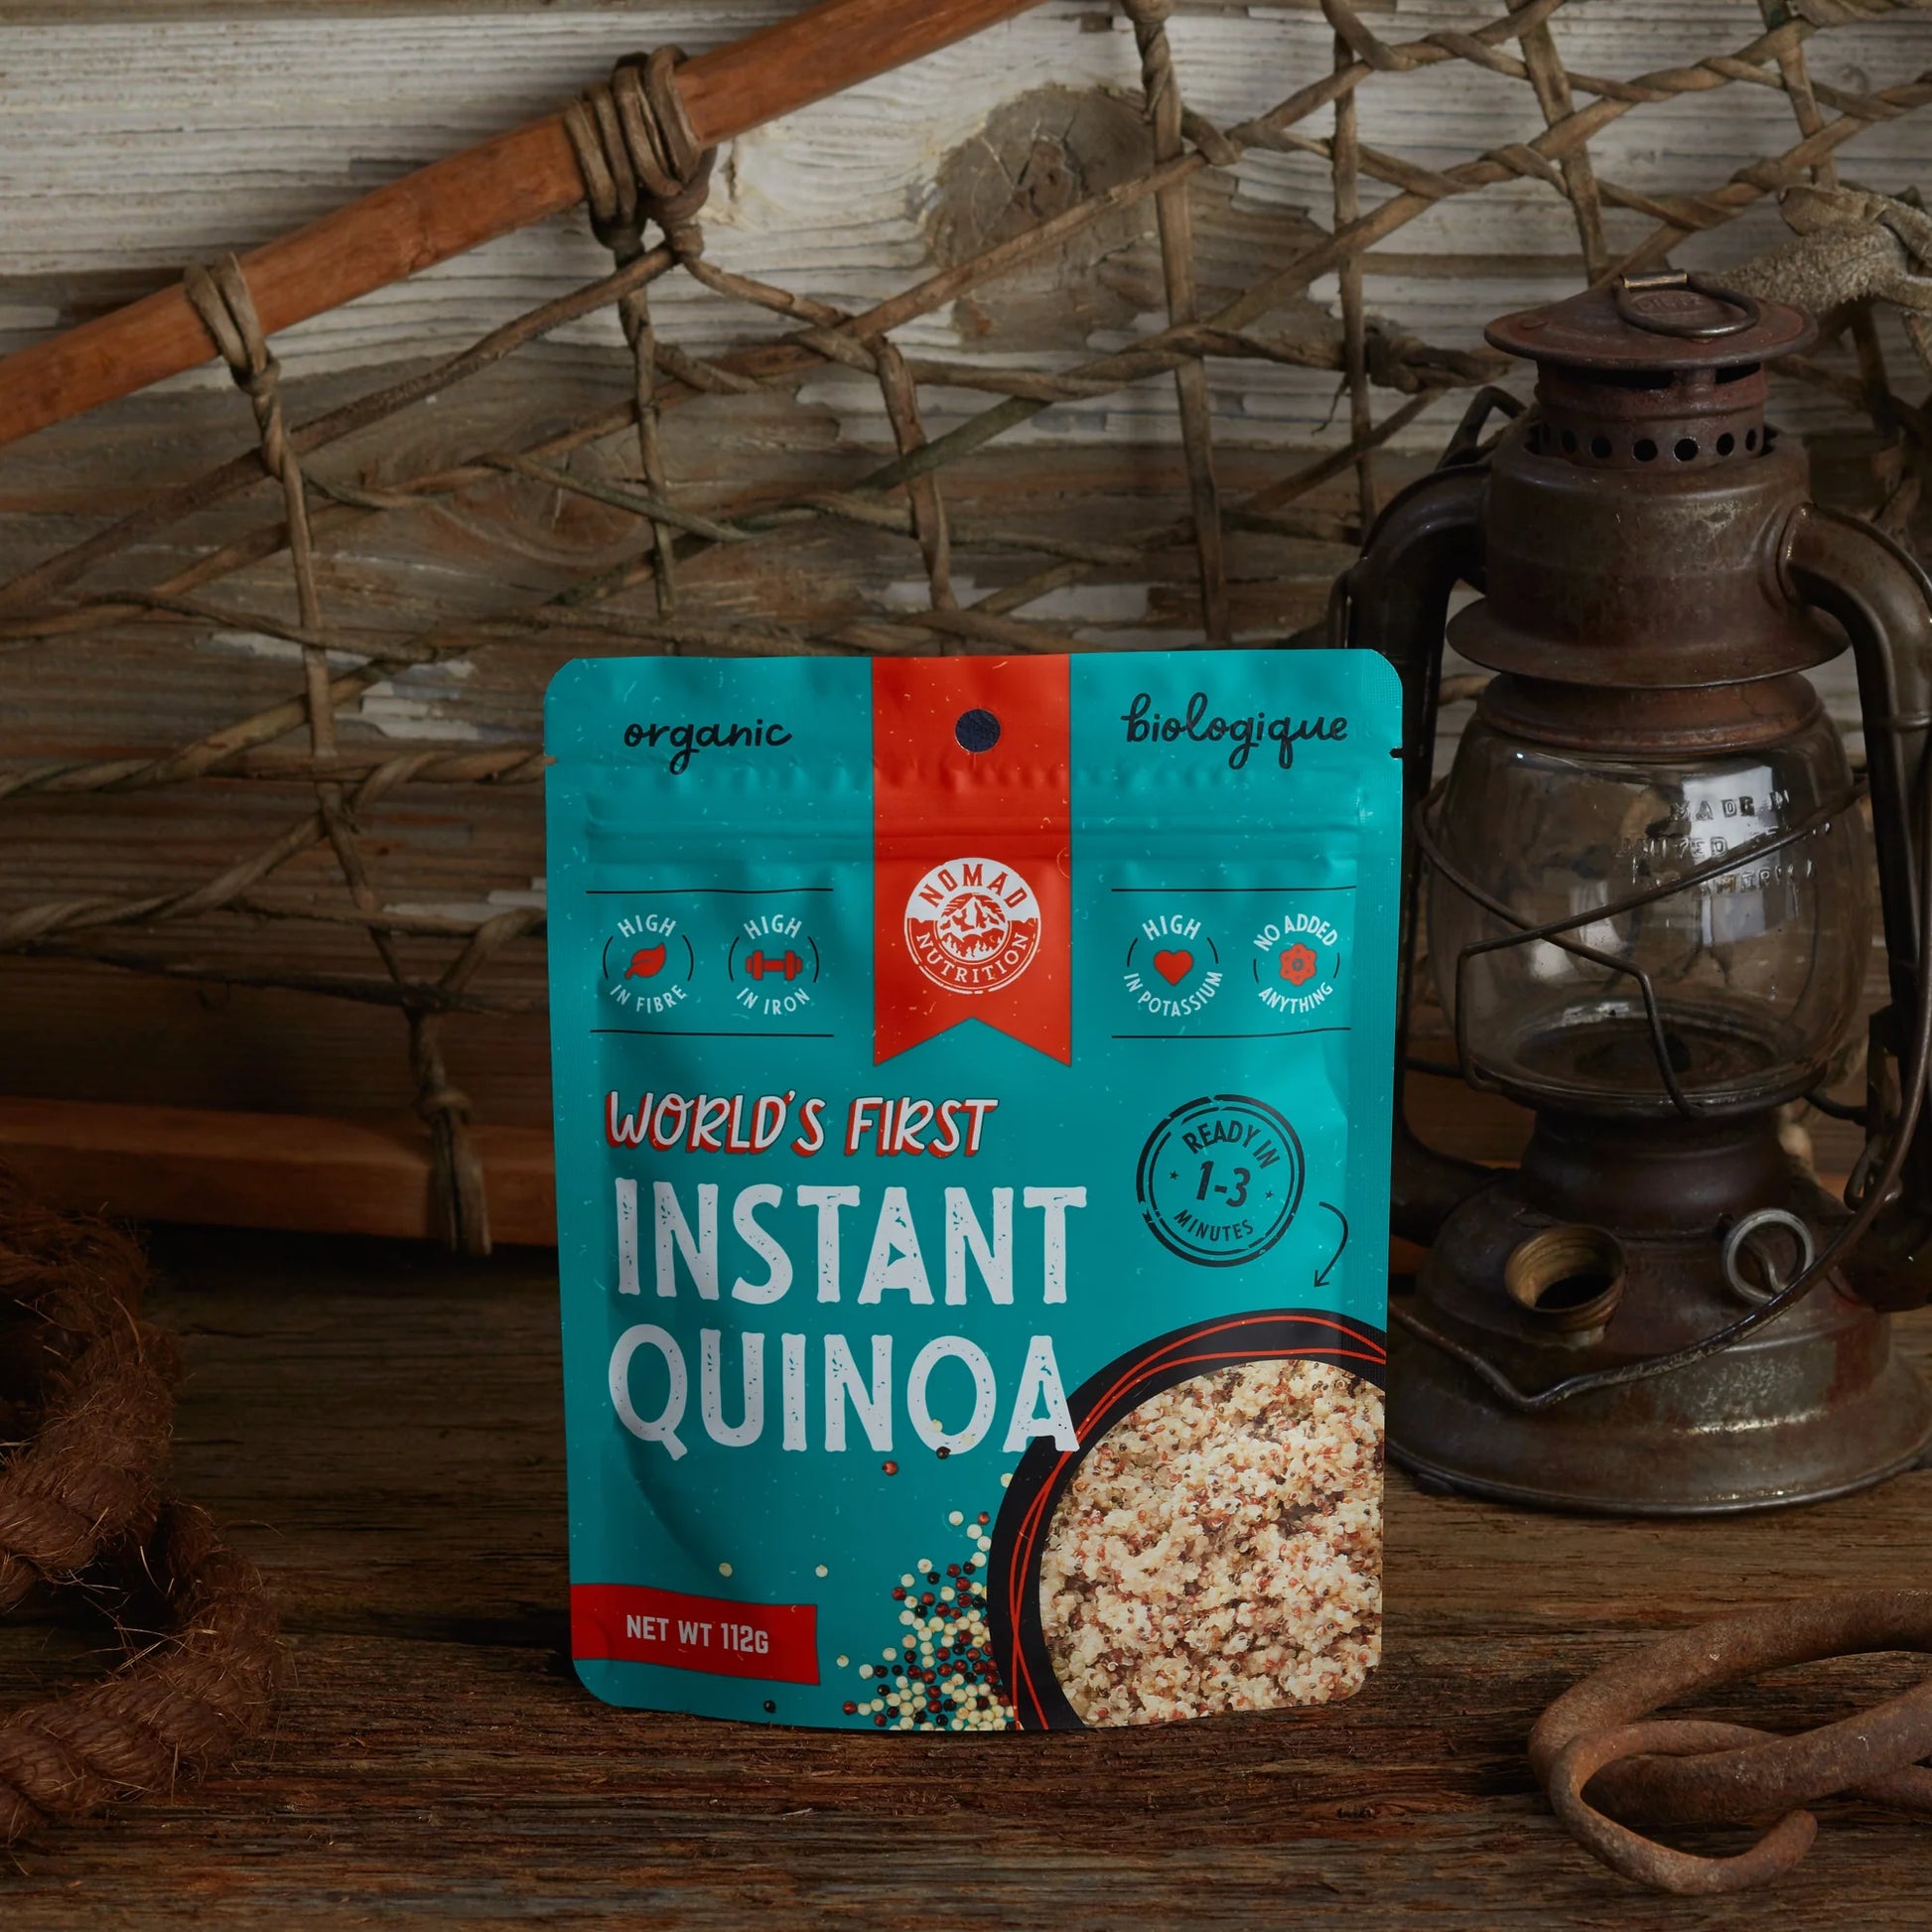 NOMAD Instant Quinoa - KBM Outdoors